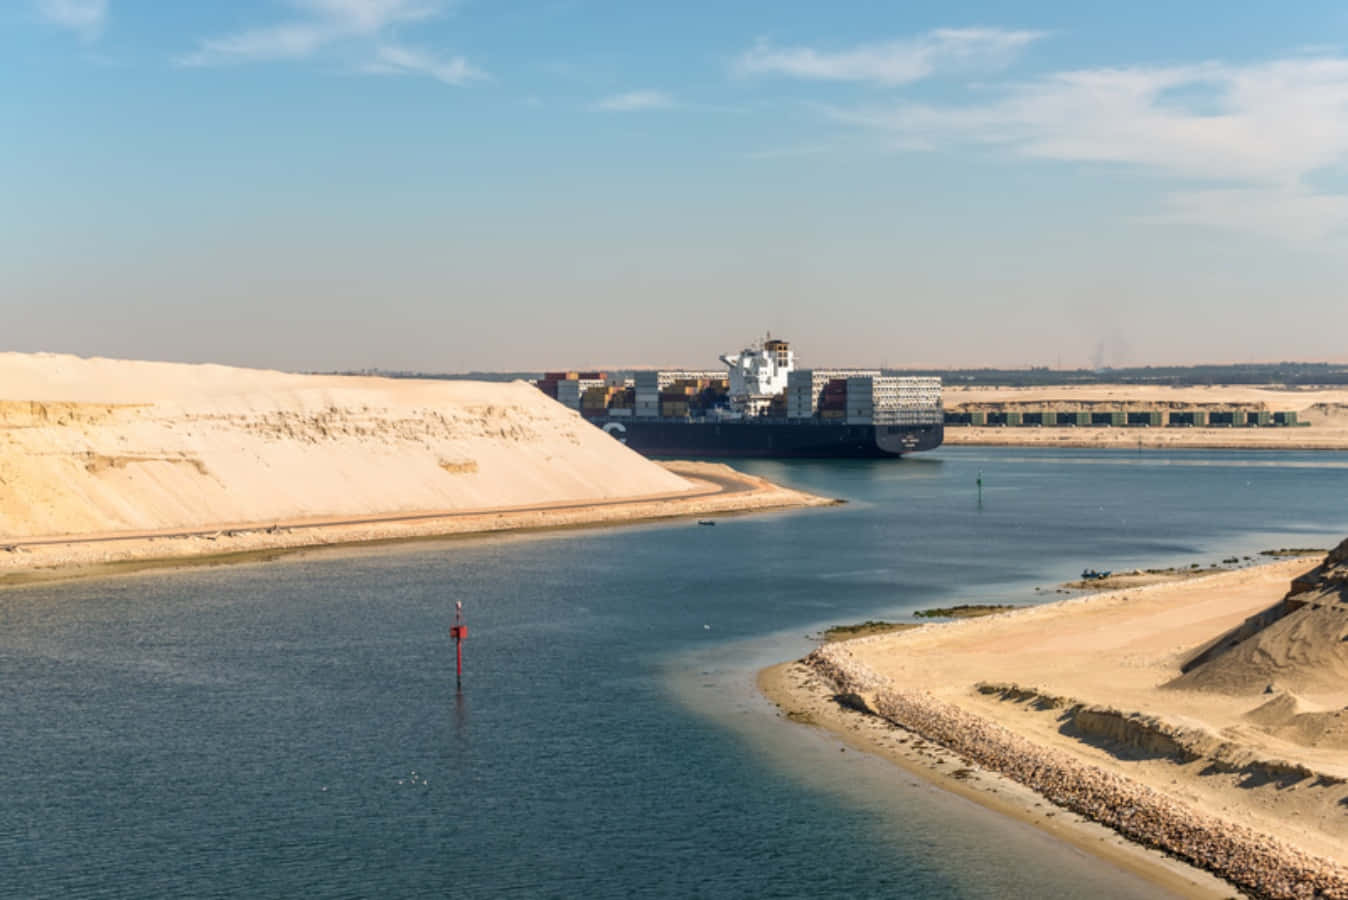 Imagemdo Navio Enorme No Canal De Suez